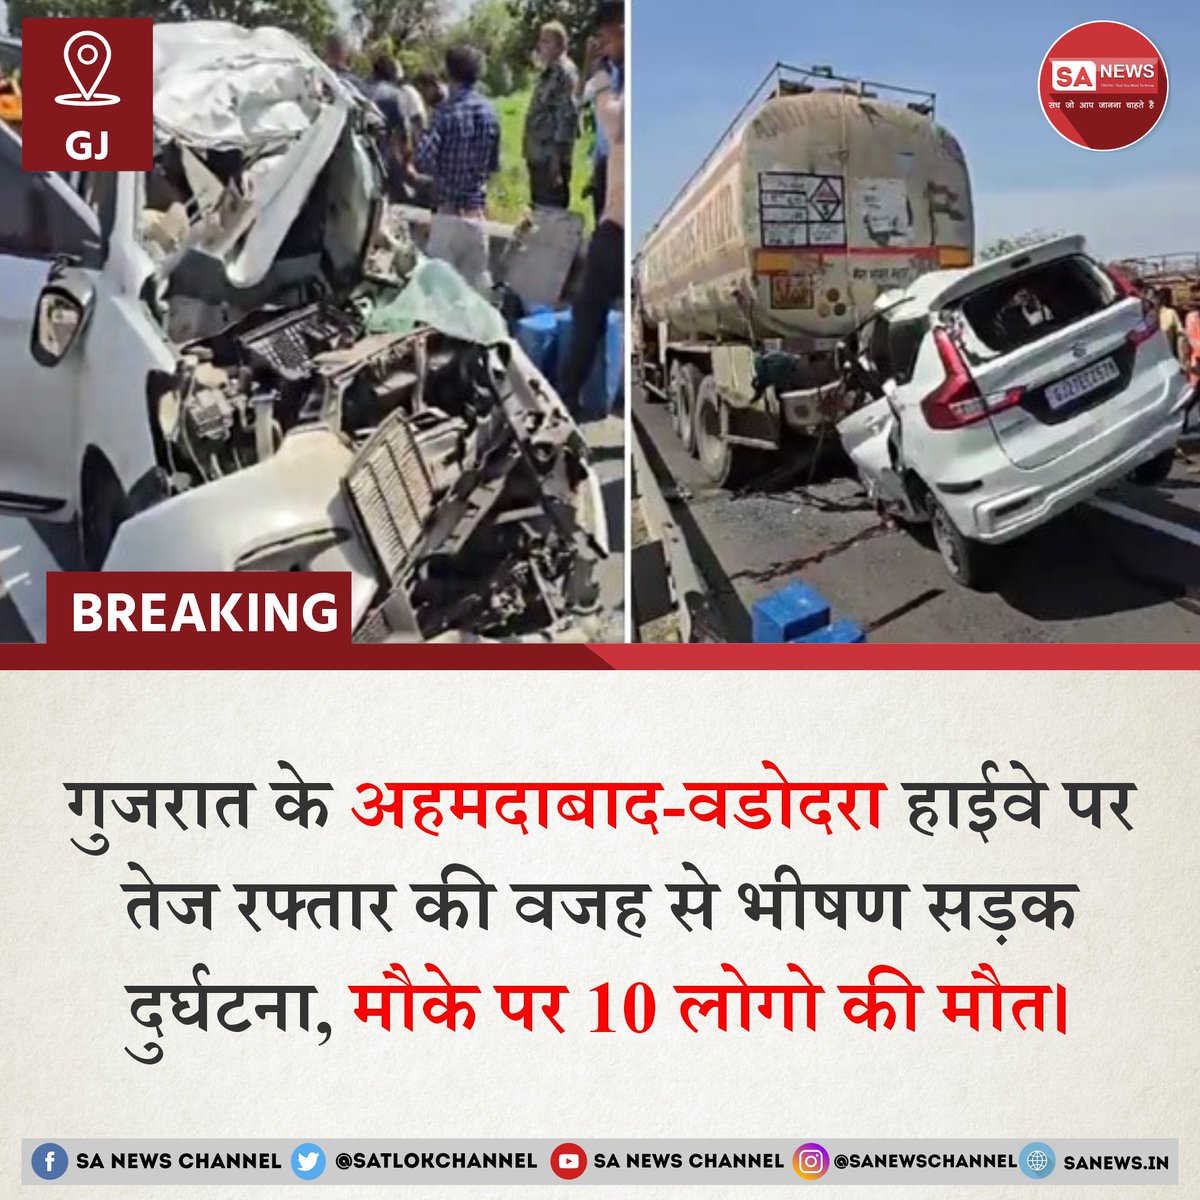 गुजरात के अहमदाबाद-वडोदरा एक्सप्रेसवे पर खड़े आयल टैंकर में ओवर स्पीड कार के टक्कर मारने के कारण कार में सवार 10 लोगों की मोके पर ही मौत हो गई। काफी तेज रफ्तार में कार वडोदरा से अहमदाबाद की तरफ जा रही थी। कारचालक का कार पर नियंत्रण नहीं था और इसी कारण कार की सीधे सड़क पर खड़े…